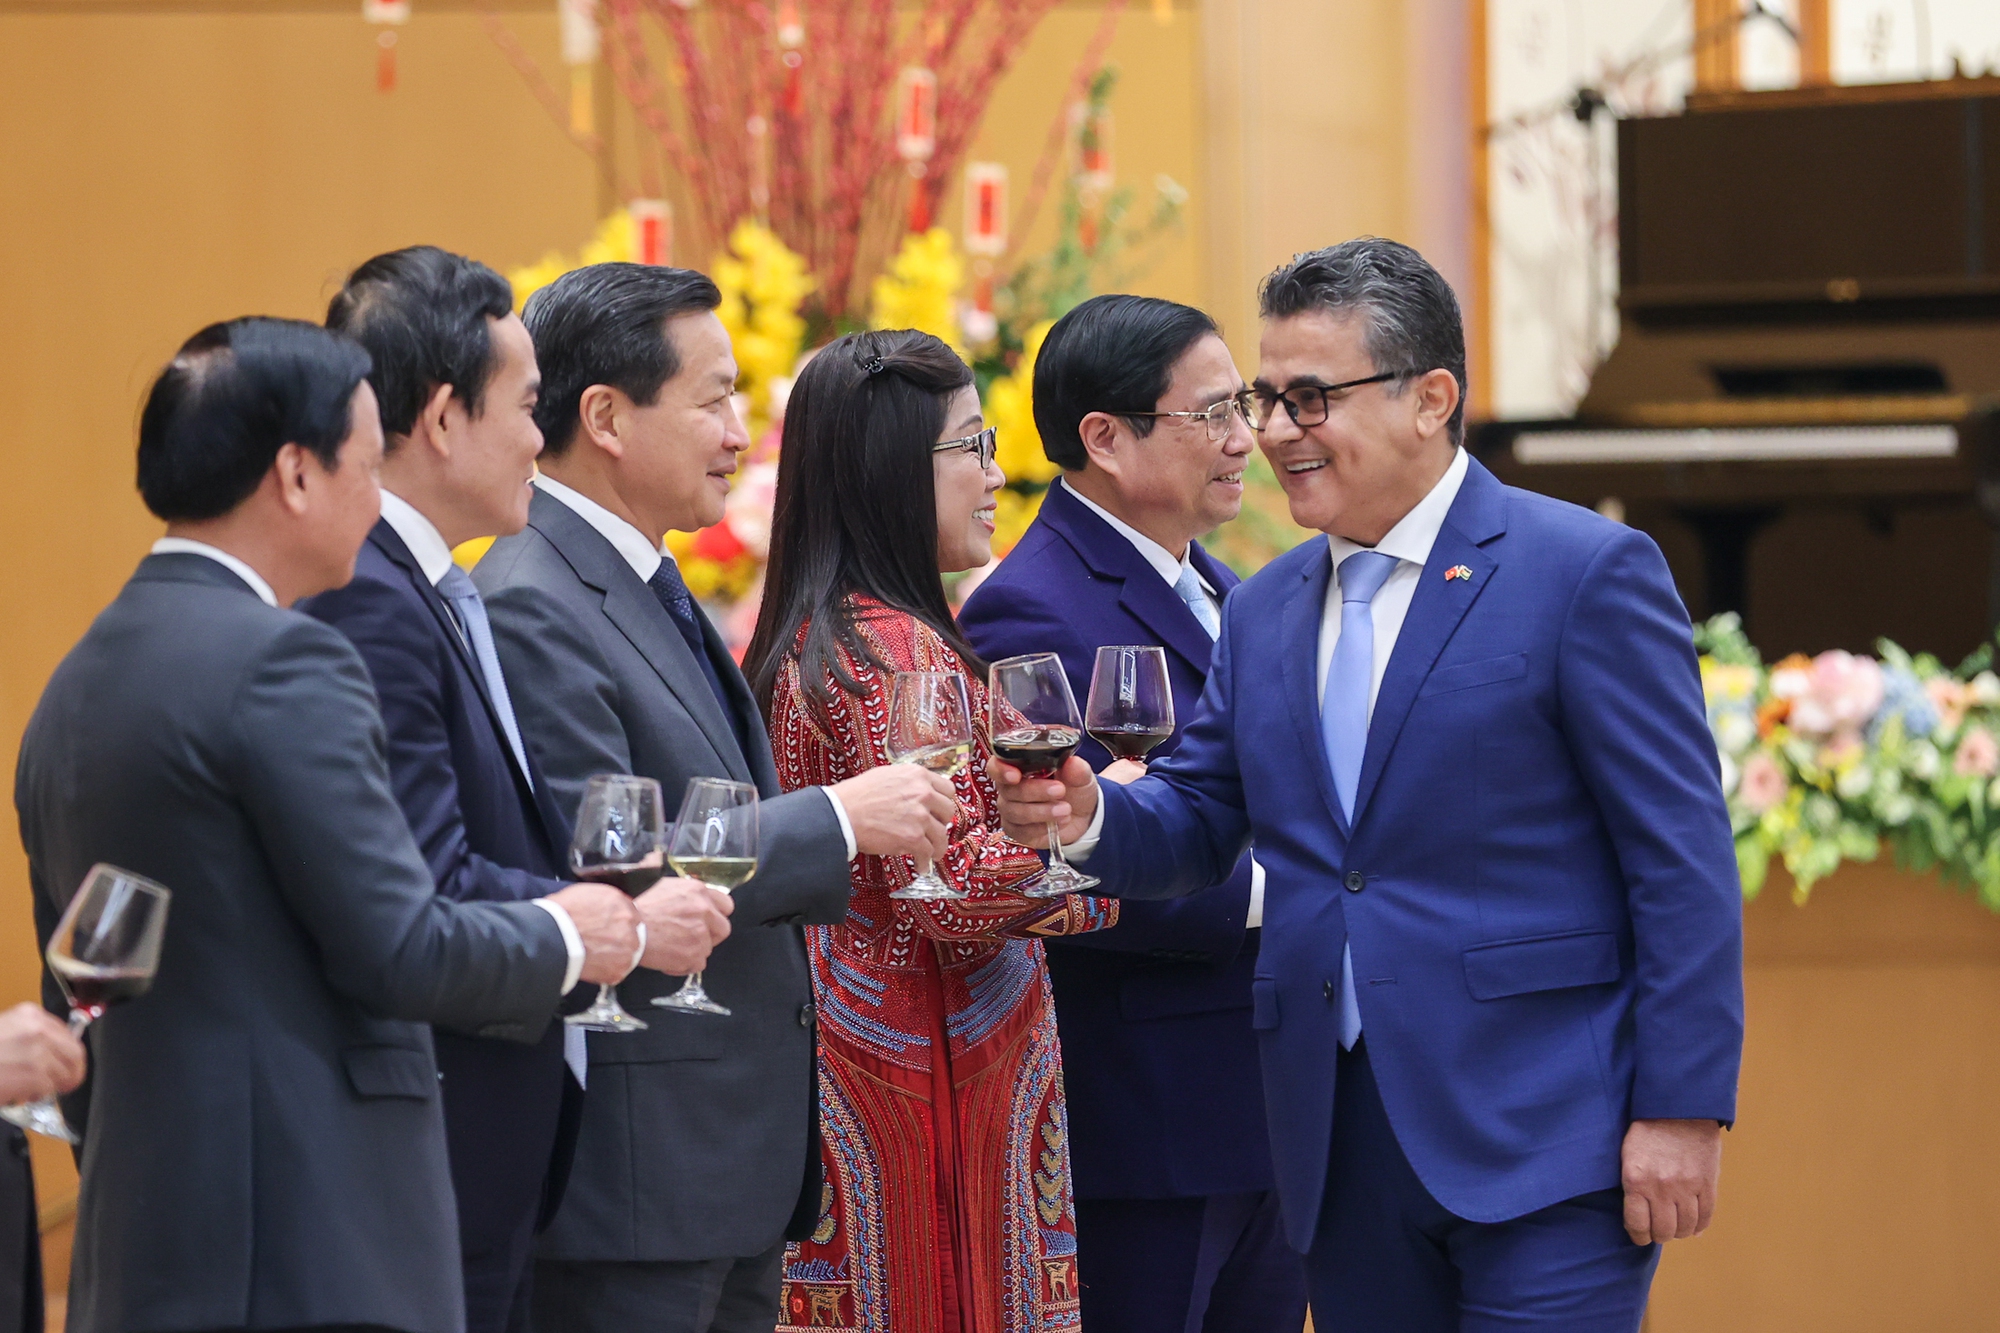 Đại sứ Nhà nước Palestine, Trưởng Đoàn Ngoại giao tại Việt Nam - Ngài Saadi Salama chúc mừng lãnh đạo Chính phủ Việt Nam nhân dịp Tết cổ truyền - Ảnh: VGP/Nhật Bắc